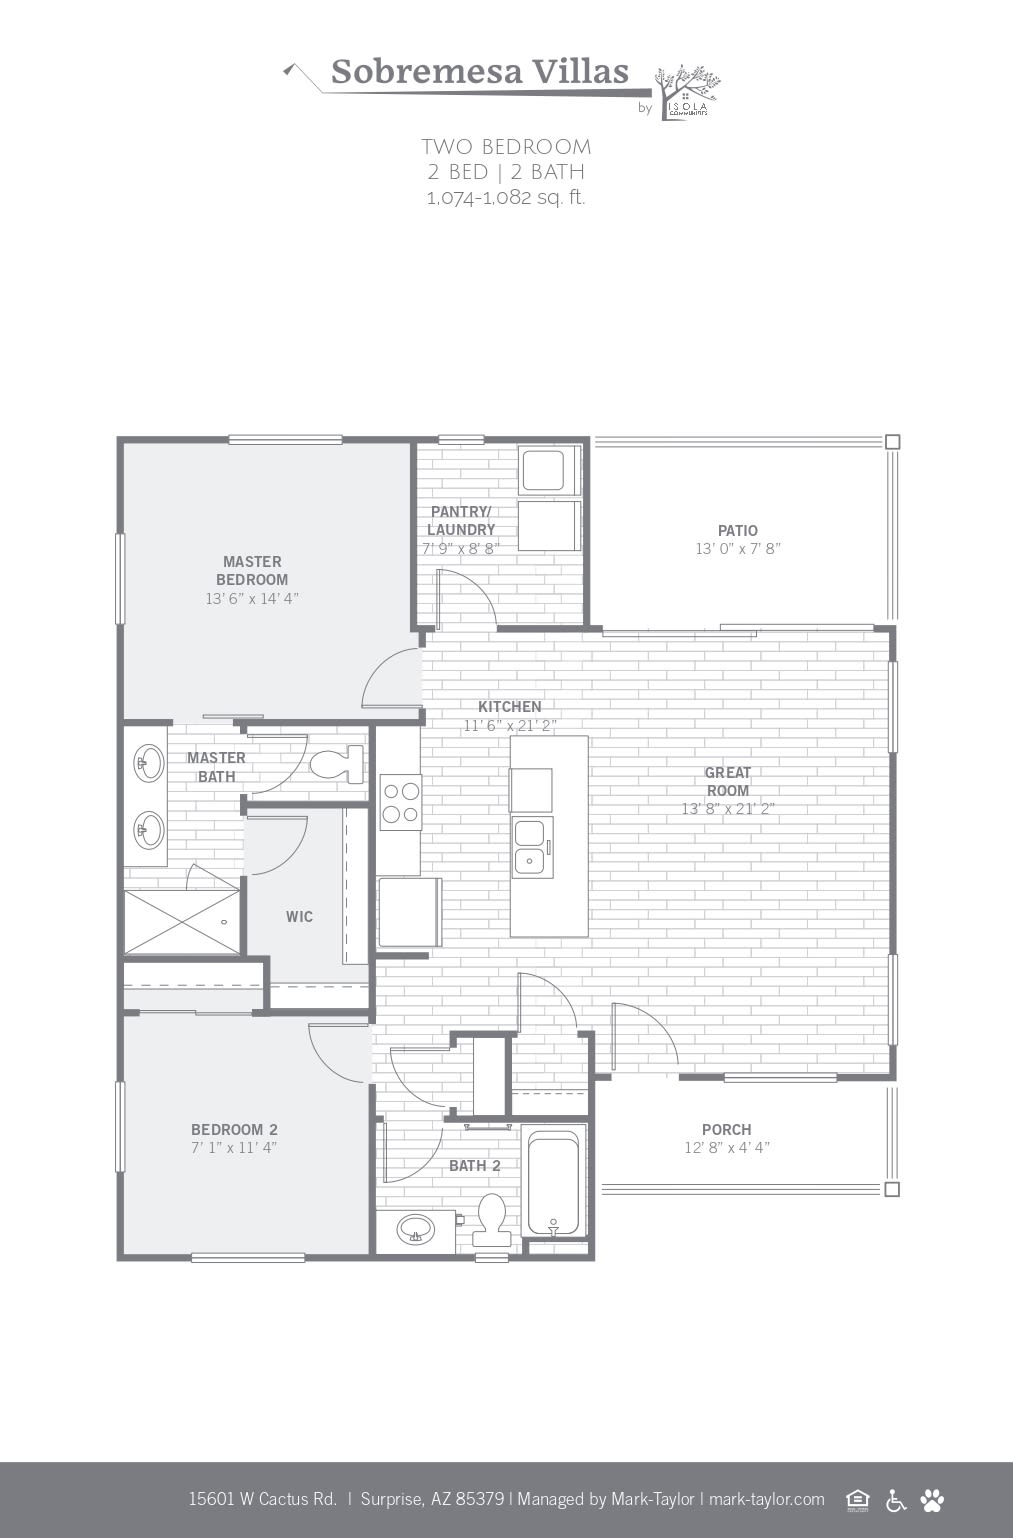 2D studio floor plan image at Sobremesa Villas in Surprise, Arizona